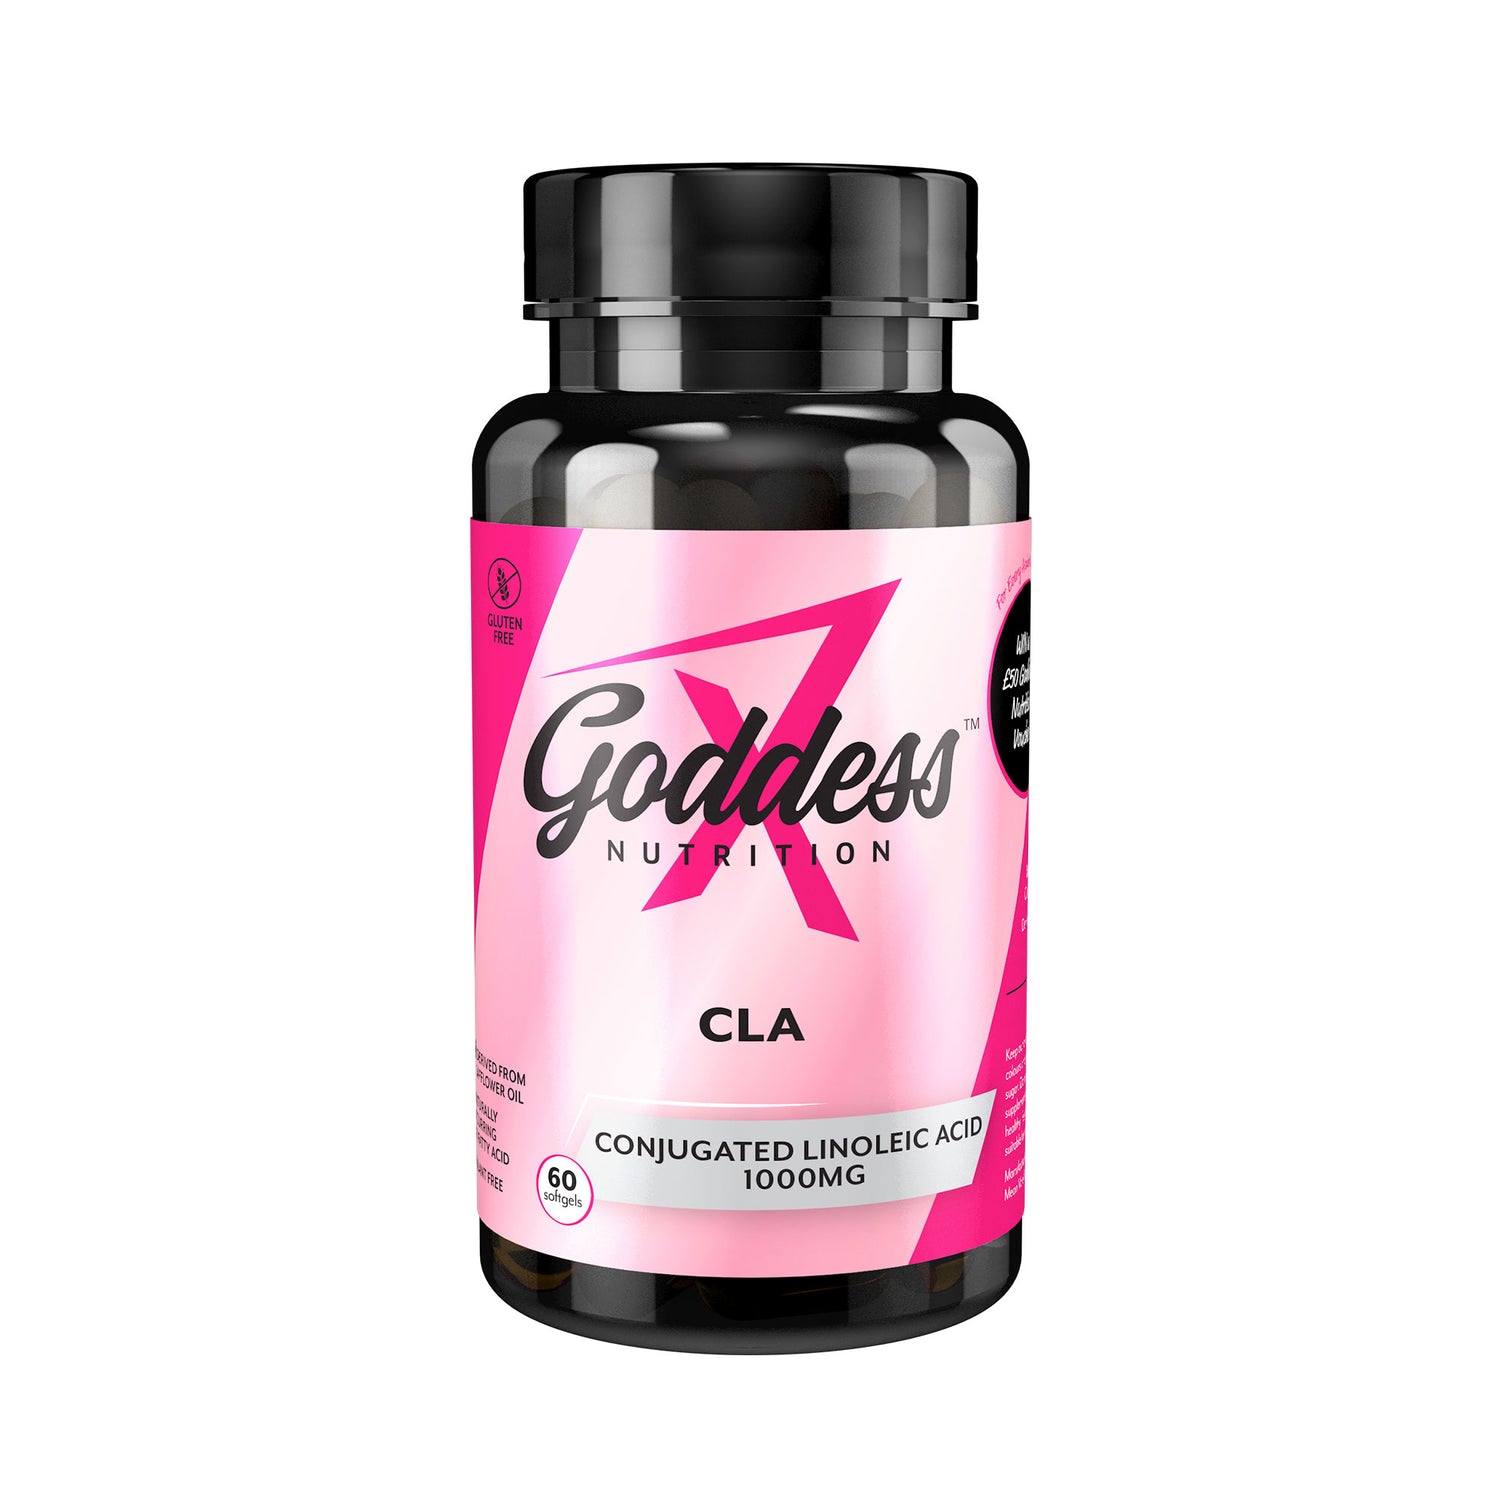 Goddess Nutrition CLA Capsules for Women